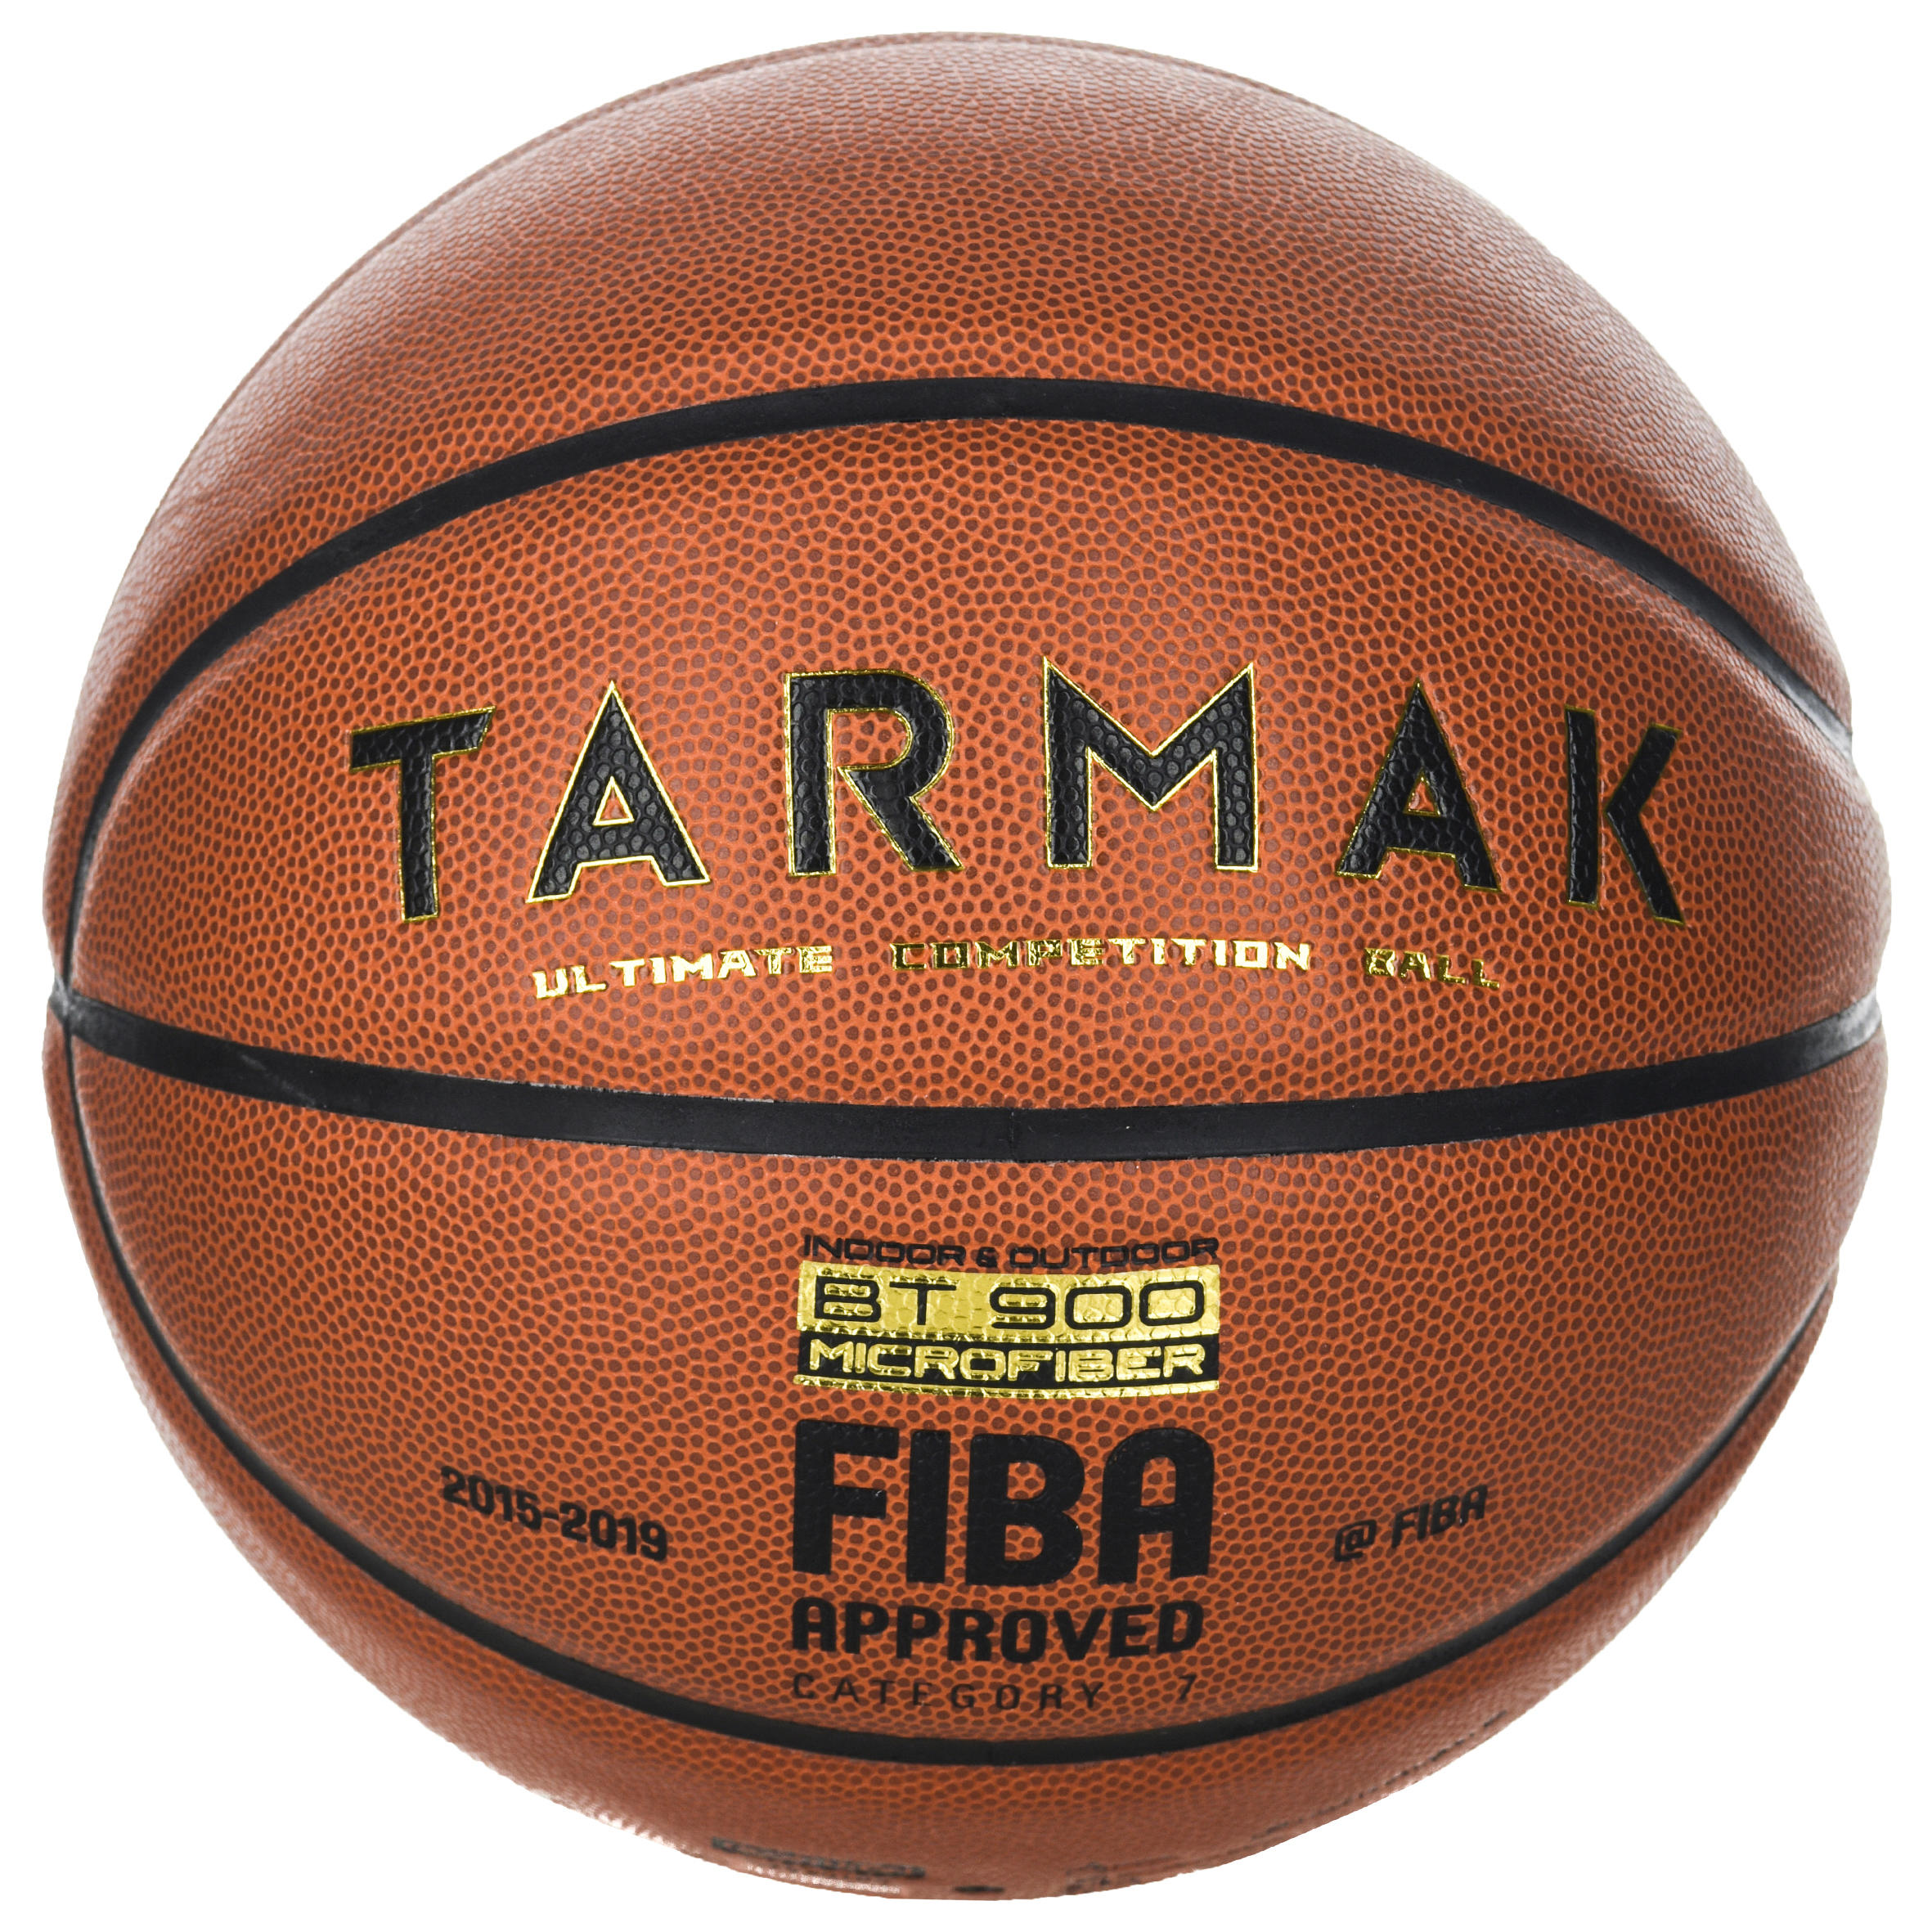 [ส่งฟรี ] ลูกบาสเกตบอล? เบอร์ 7 ที่ผ่านการรับรองโดย FIBA สำหรับเด็กและผู้ใหญ่รุ่น BT900 Basketball Ball ? BT900 Size 7 Basketball FIBA-approved for boys and adults ลูกบาสเกตบอล 6 7